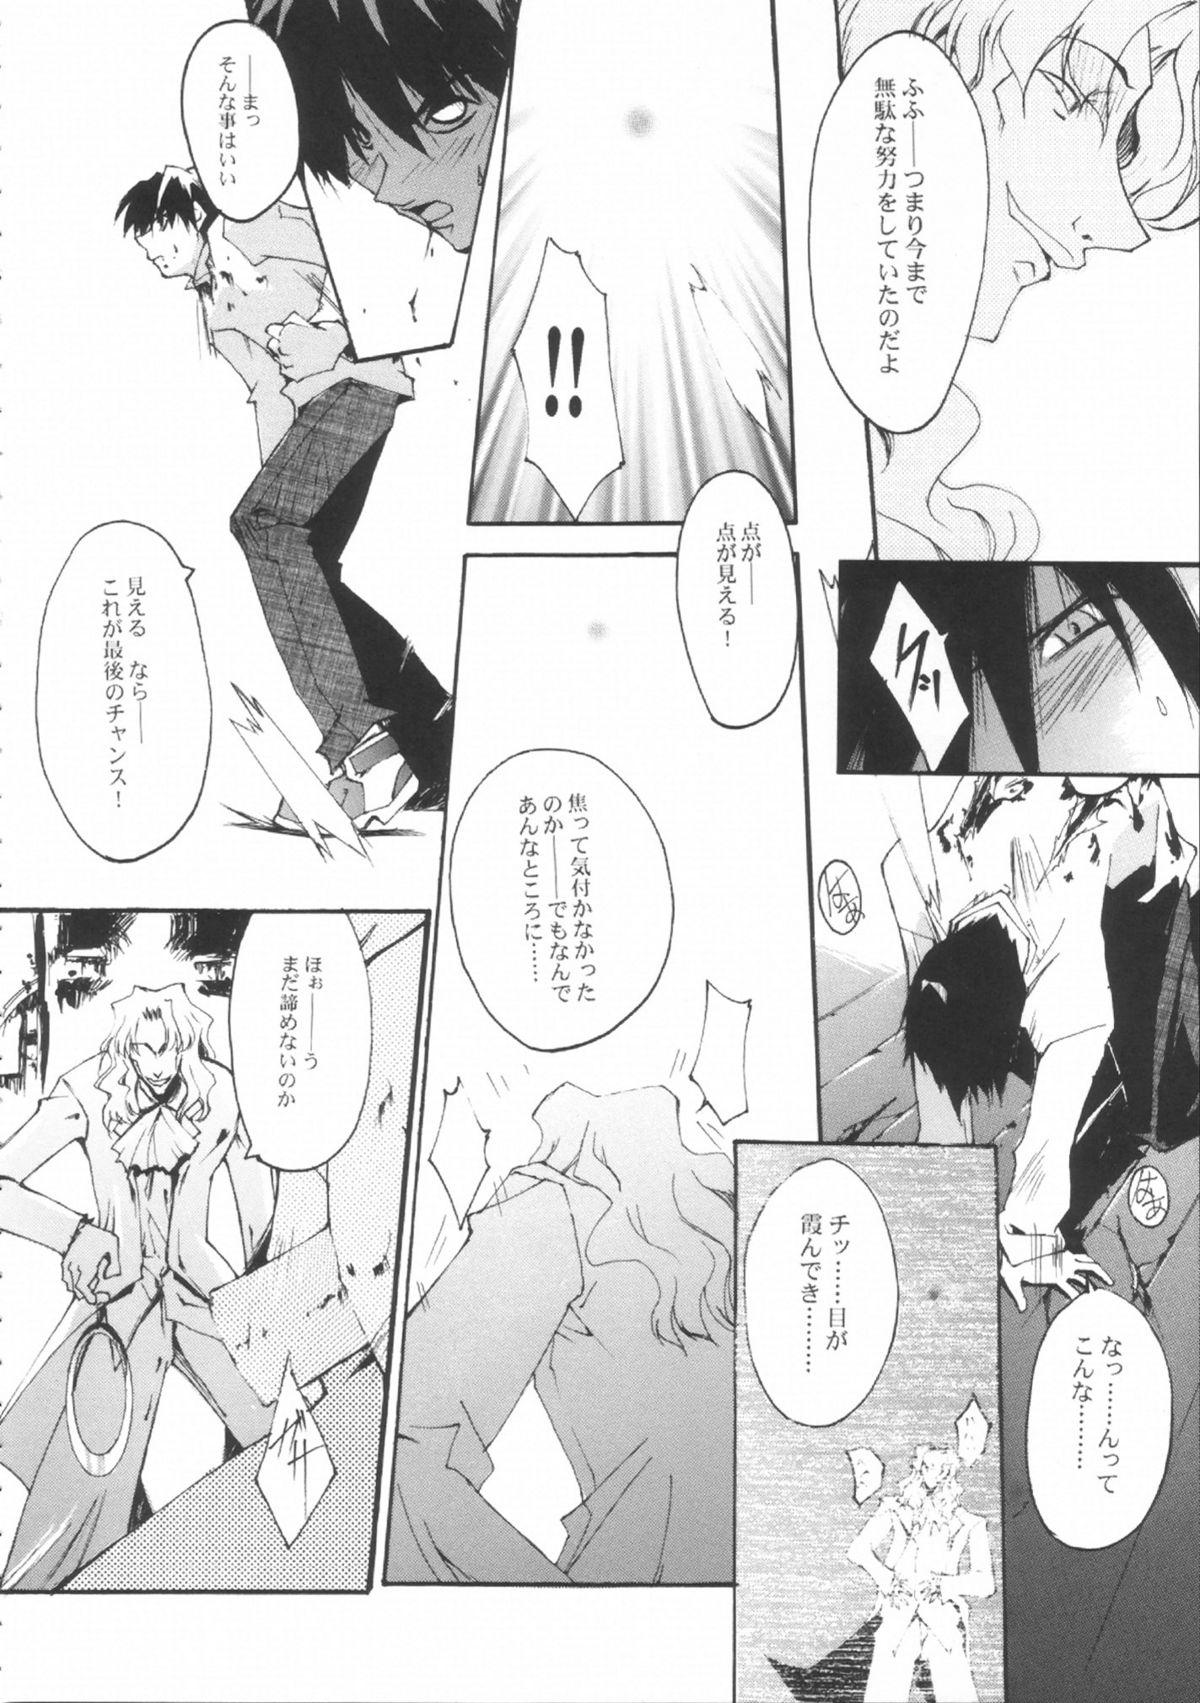 Pija NIGREDO LUNA - Tsukihime Friends - Page 9